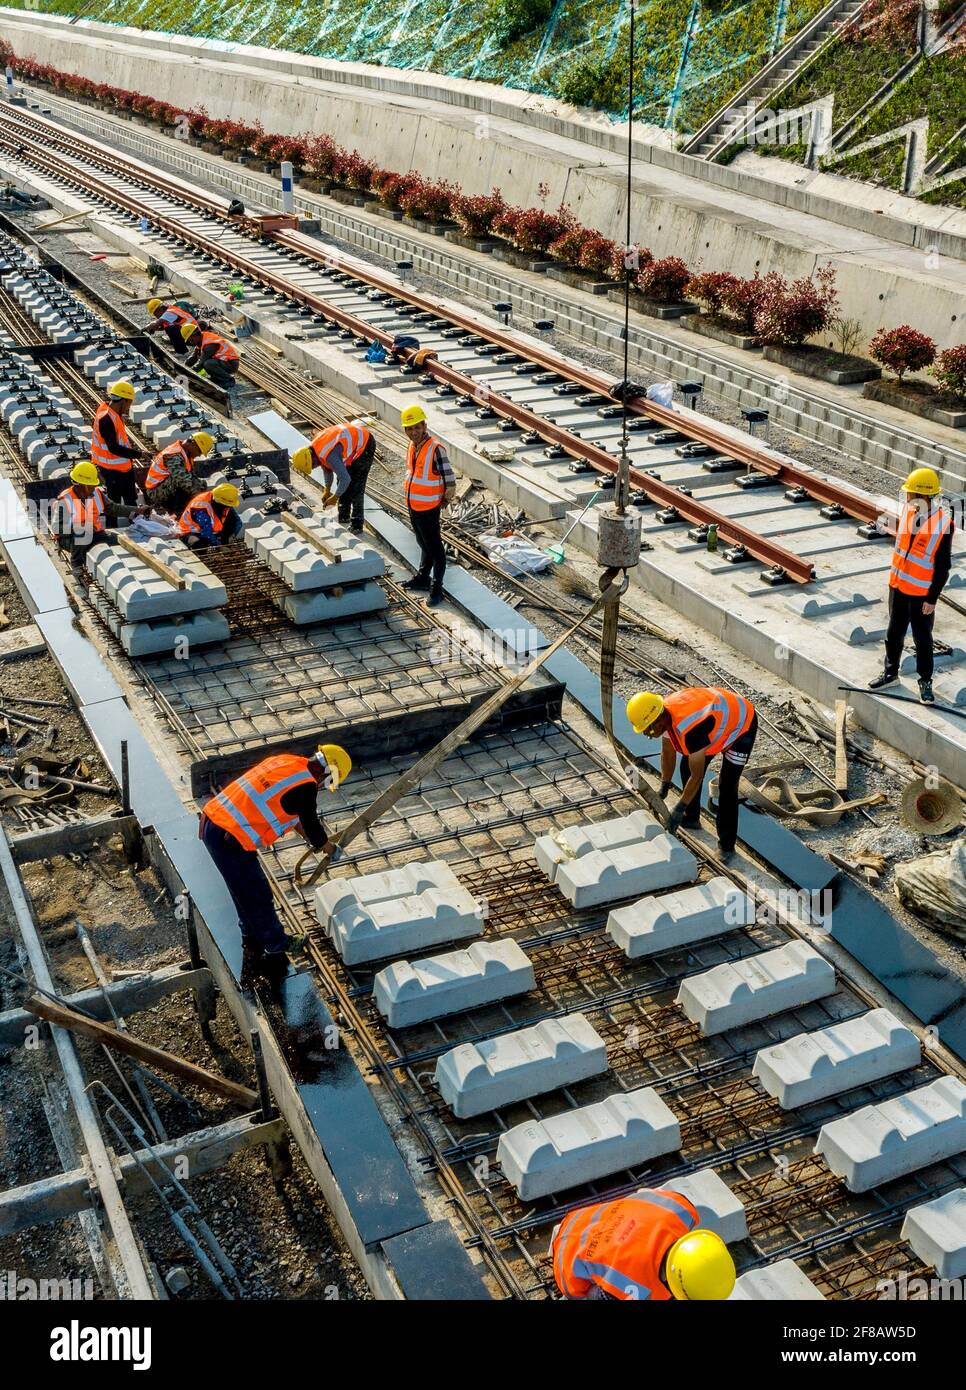 (210413) -- NANZHANG, 13. April 2021 (Xinhua) -- Luftfoto vom 12. April 2021 zeigt Arbeiter, die auf den ballastlosen Gleisen auf der Baustelle der Nanzhang Station der Hochgeschwindigkeitsbahn Zhengzhou-Wanzhou im Bezirk Nanzhang, der zentralchinesischen Provinz Hubei, arbeiten. Mit einer Geschwindigkeit von 350 km/h ist die Zhengzhou-Wanzhou-Eisenbahn, die Zhengzhou in der zentralchinesischen Provinz Henan und Wanzhou im südwestchinesischen Chongqing verbindet, ein wichtiger Teil des Eisenbahnsystems in den beiden Regionen. Im Vergleich zu herkömmlichen Strecken hat die ballastlose Strecke eine längere Lebensdauer und erfordert eine längere Lebensdauer Stockfoto